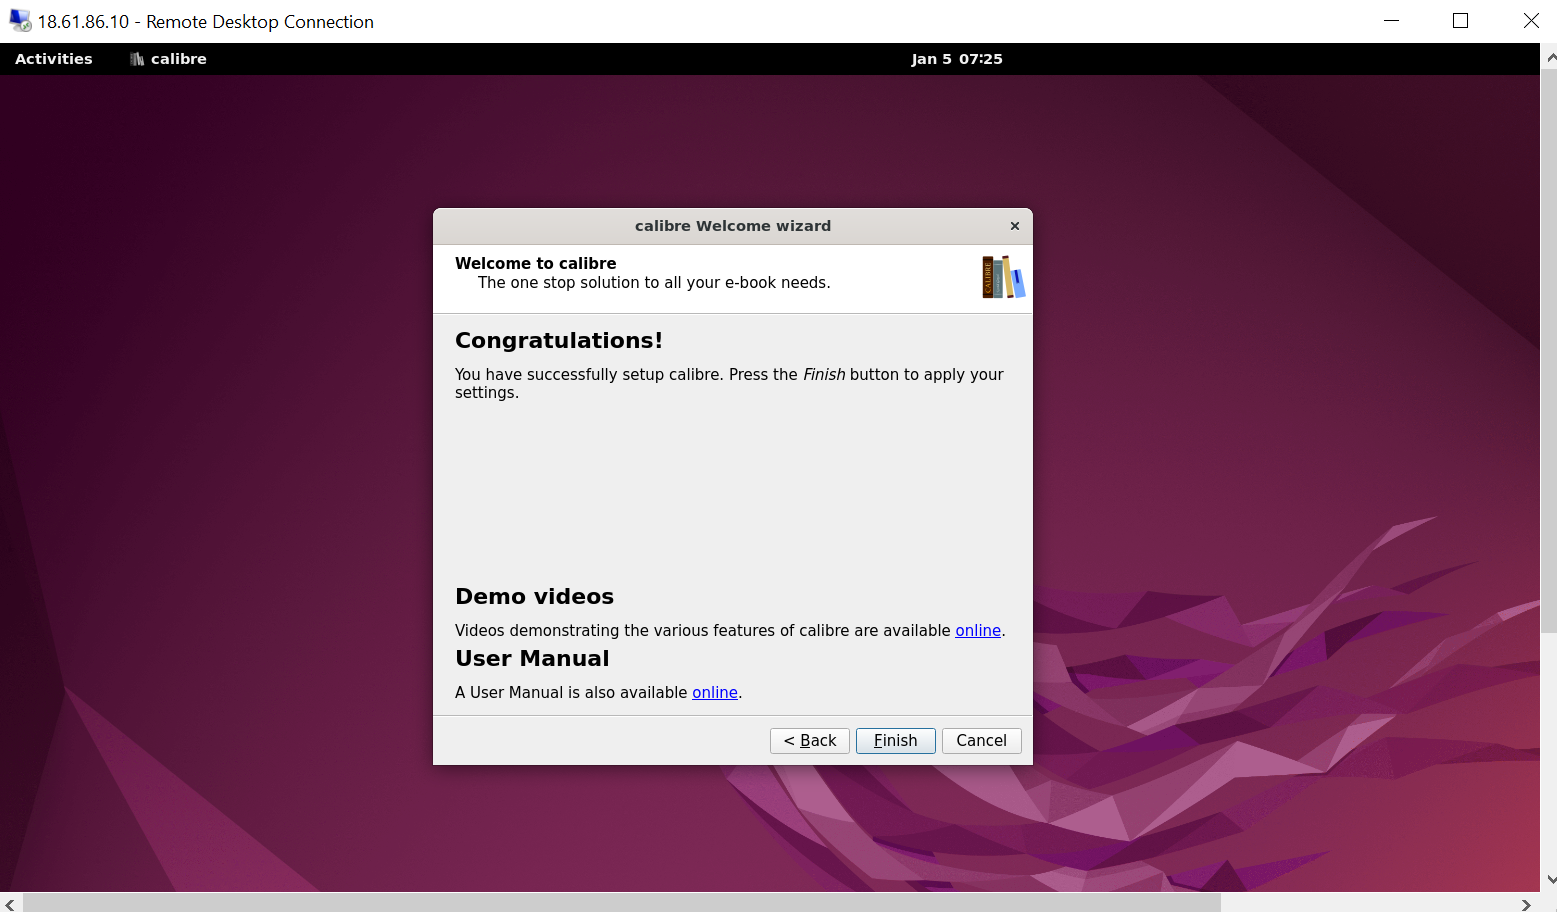 Finished configuring Calibre on Ubuntu 22.04 or 20.04 - Example 3.